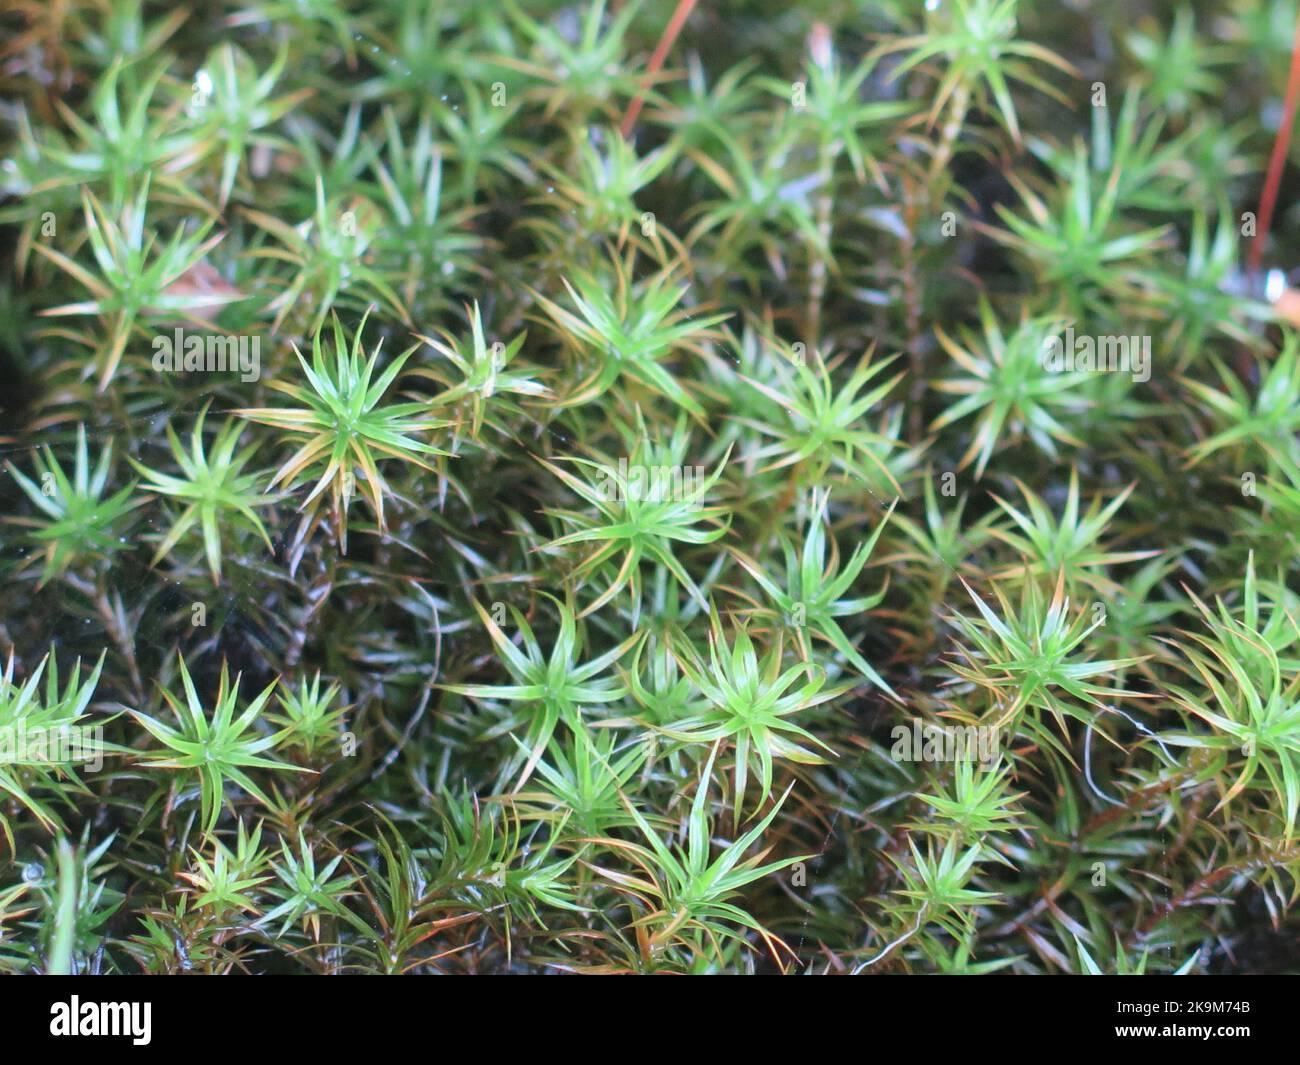 polytrichum-strictum-bog-haircap-moss-or-an-evergreen-grass-nature-background-pattern-closeup-2K9M74B.jpg